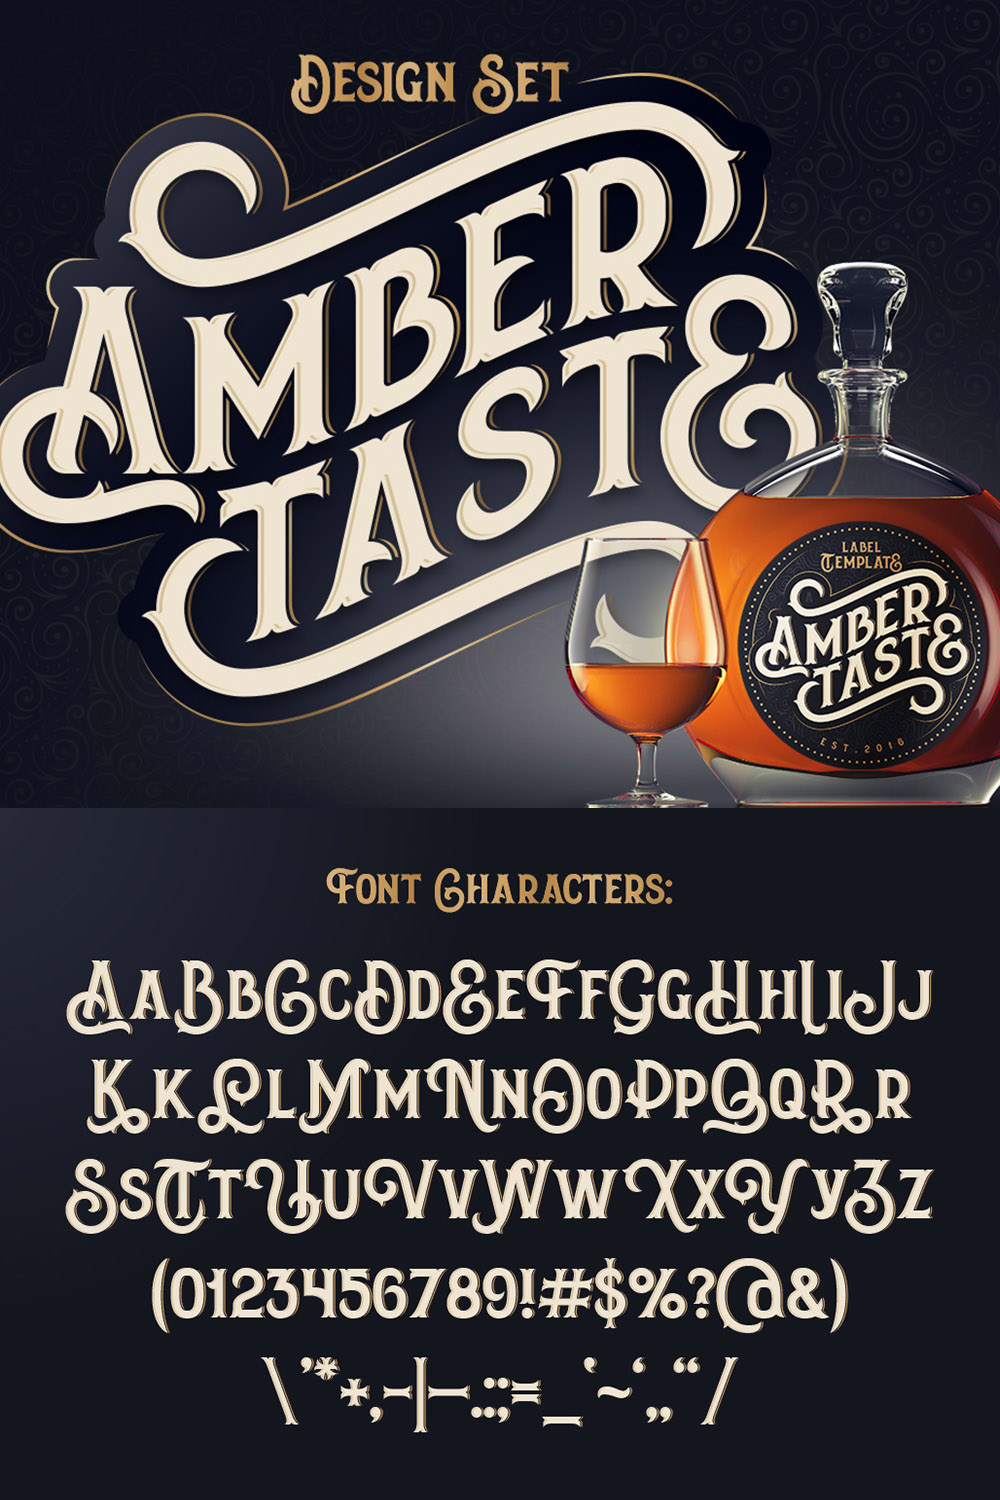 Amber Taste Font, Label, Mockup - pinterest image preview.